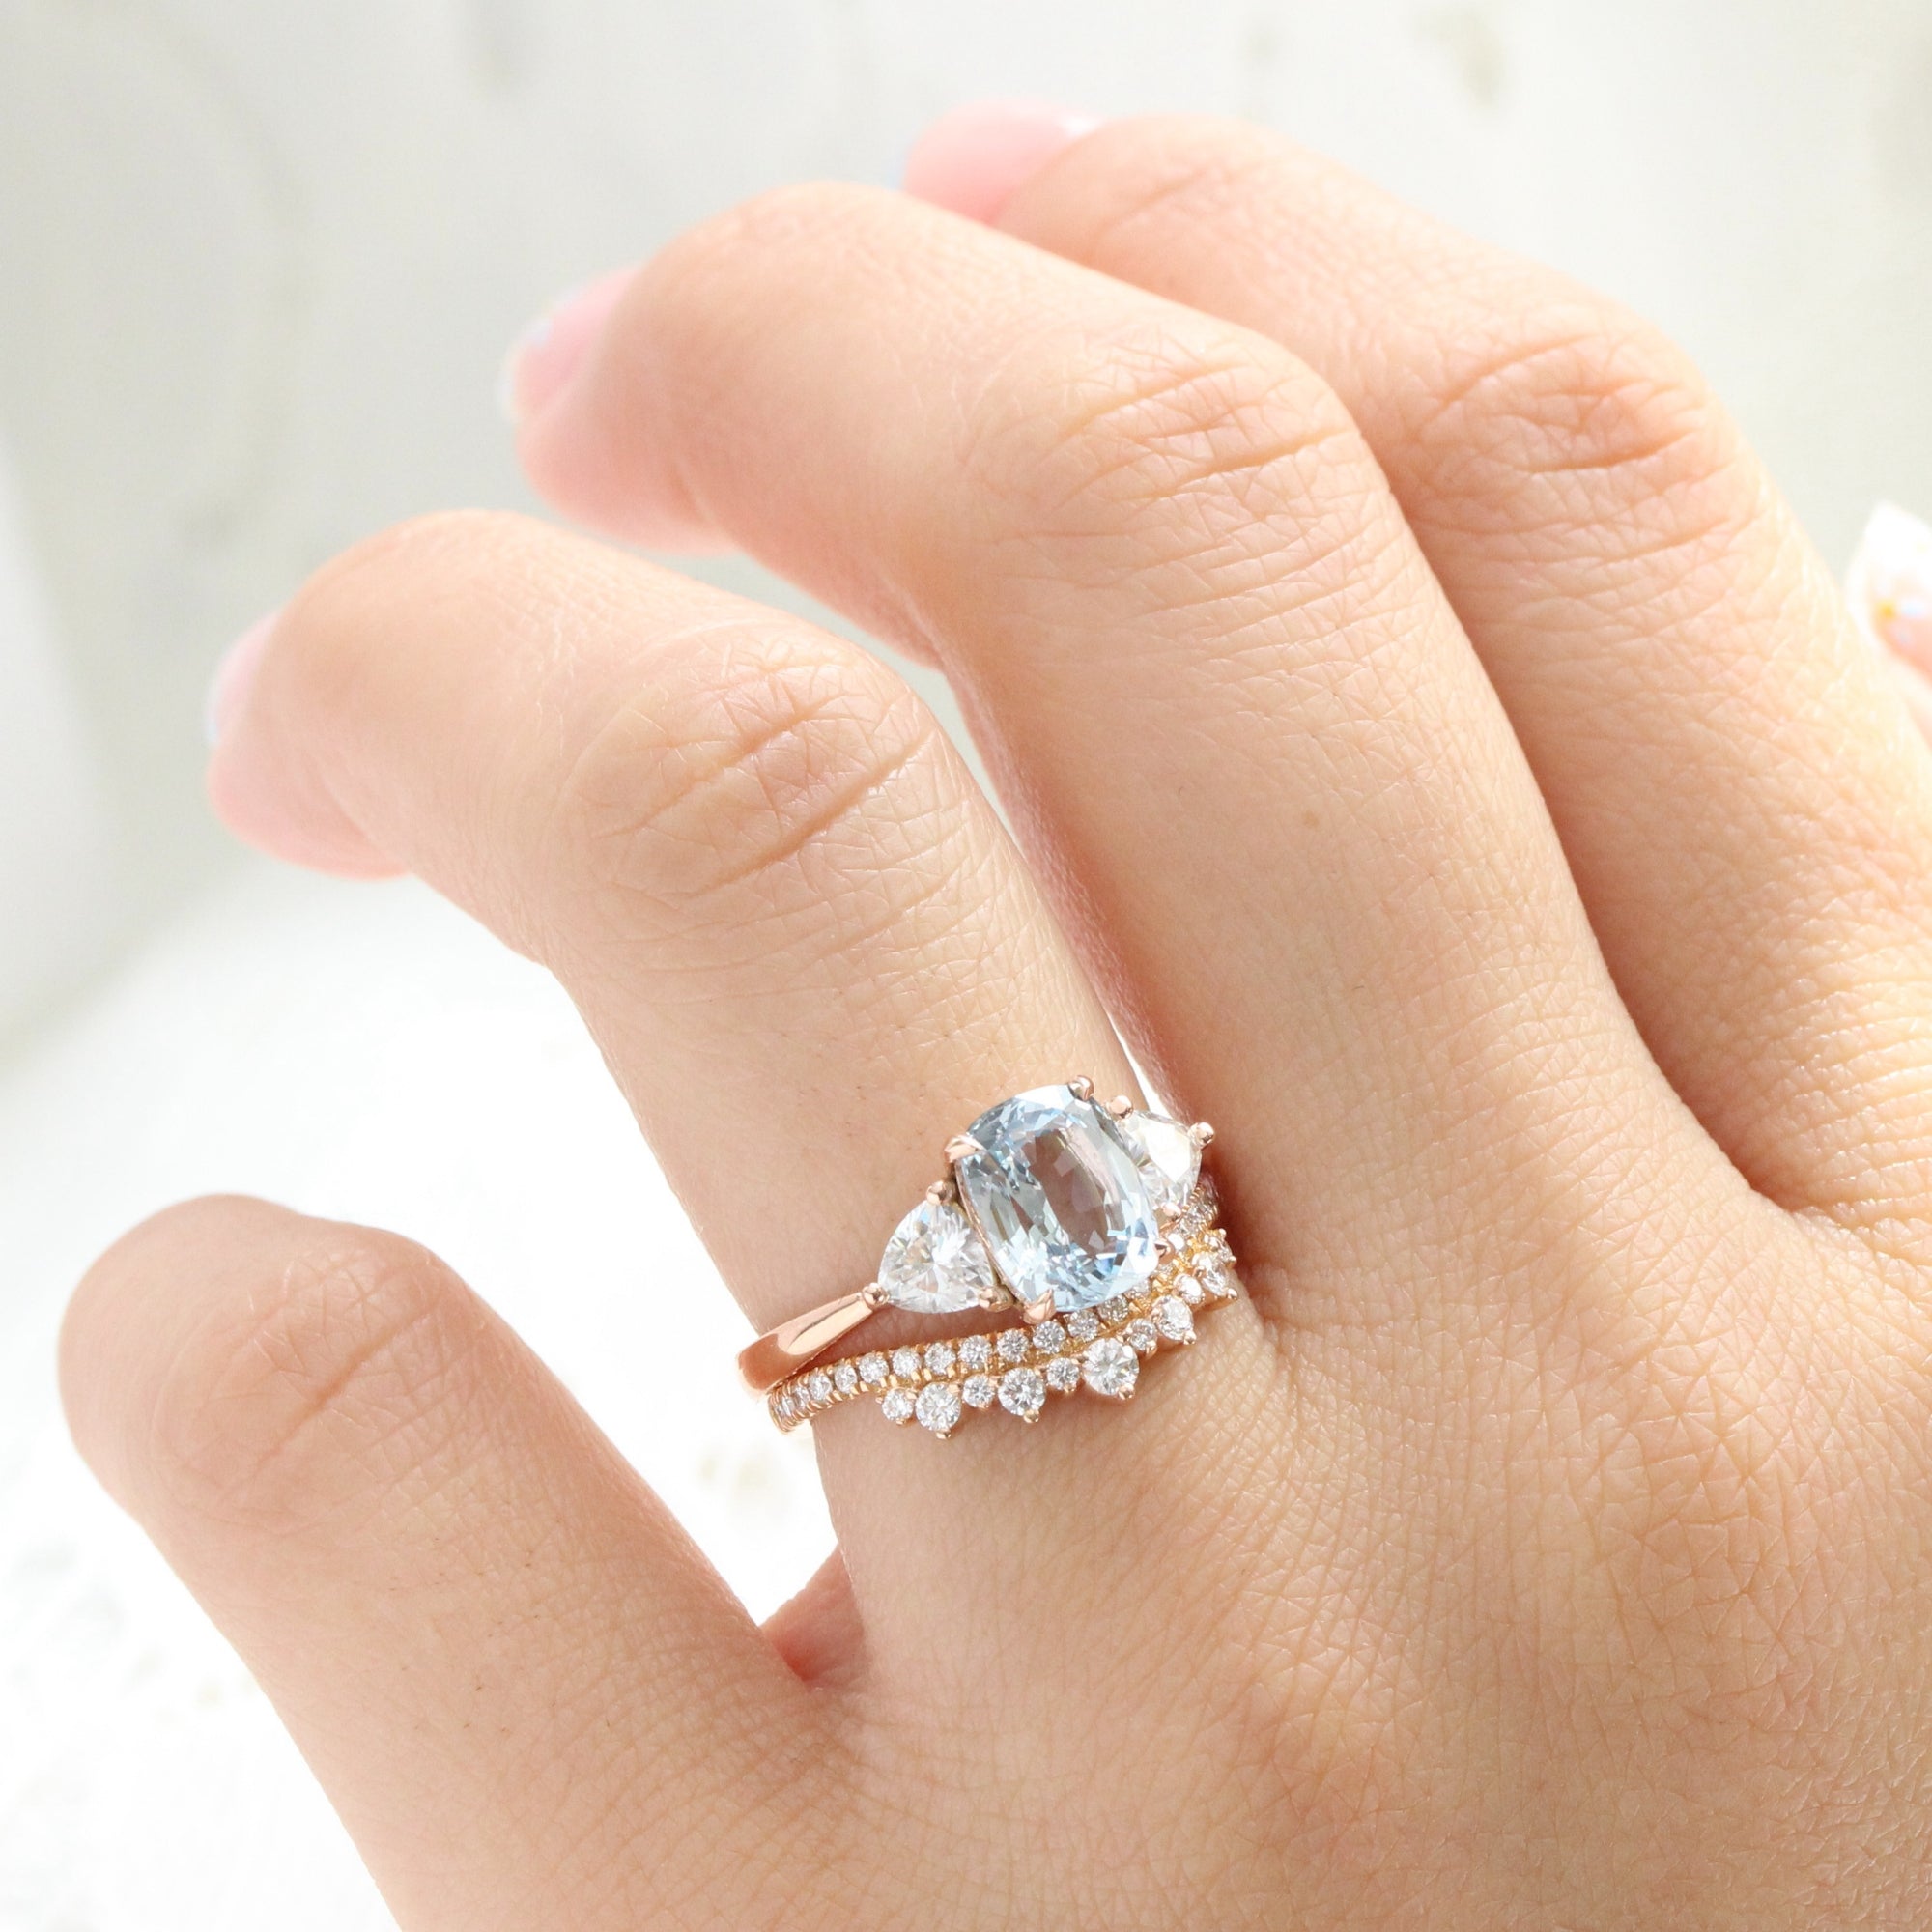 1ct Diamond 3 Three Stone Engagement Ring 10K White Gold